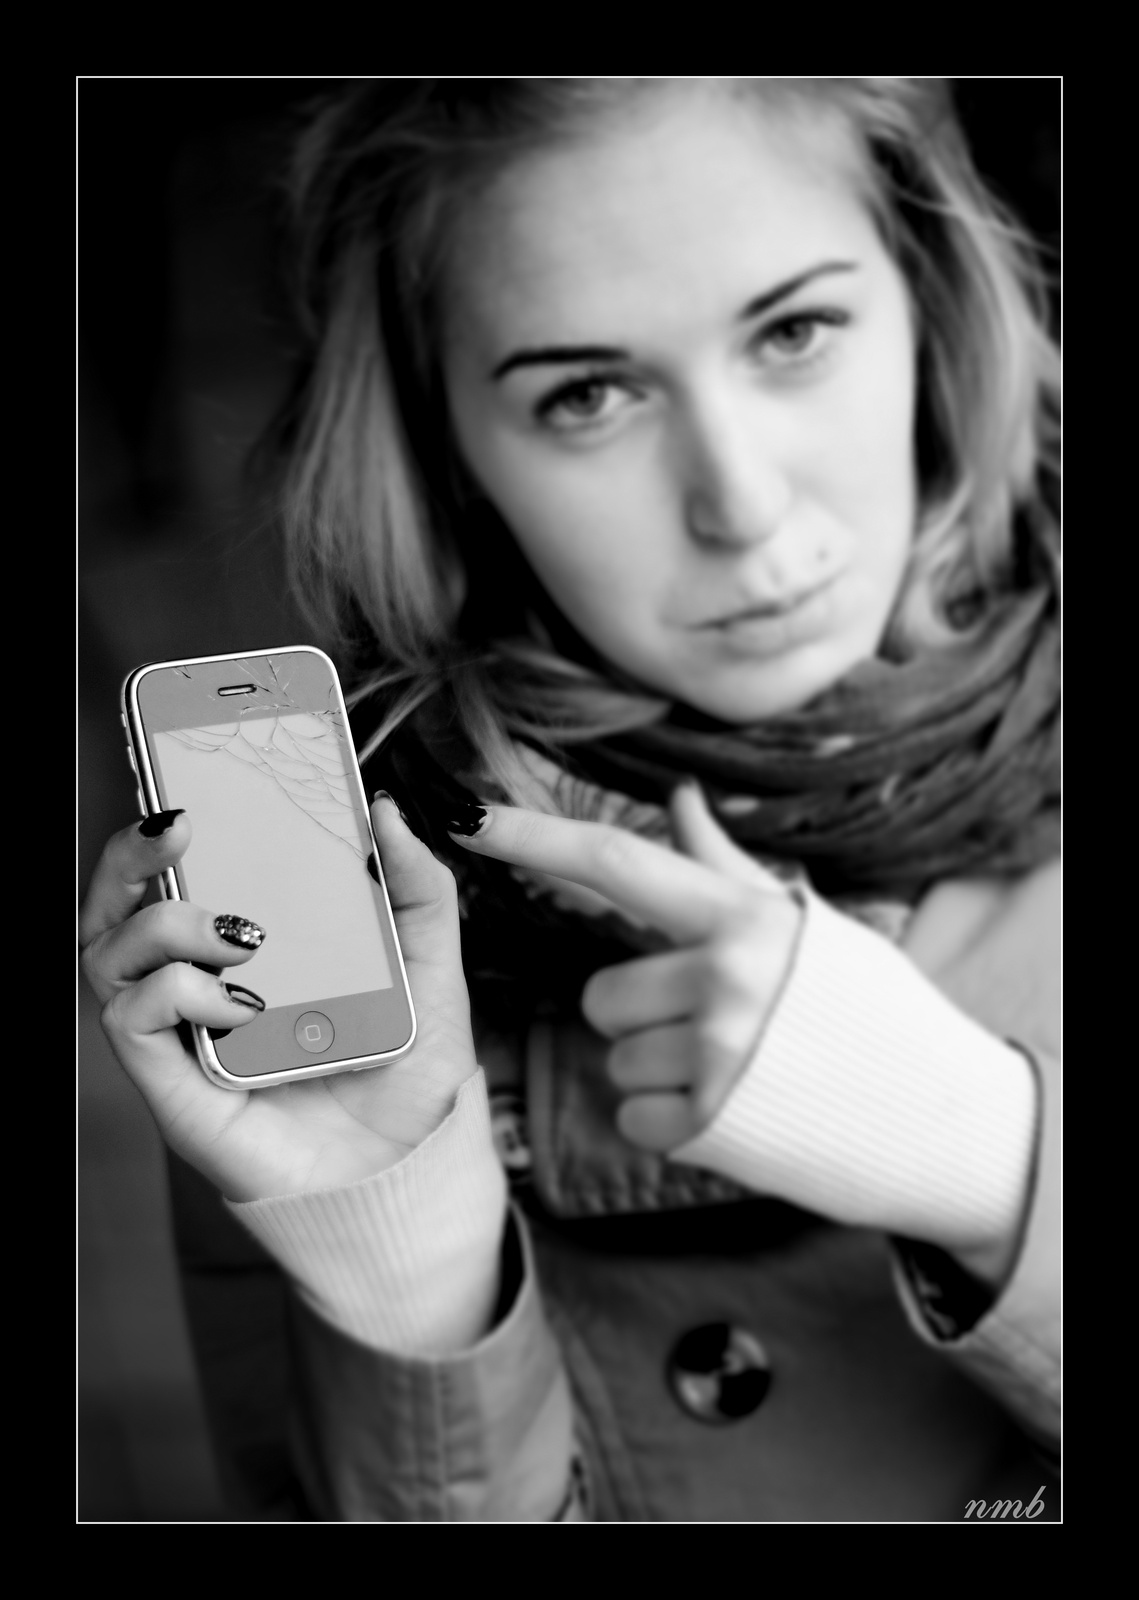 BrokenPhone 3G